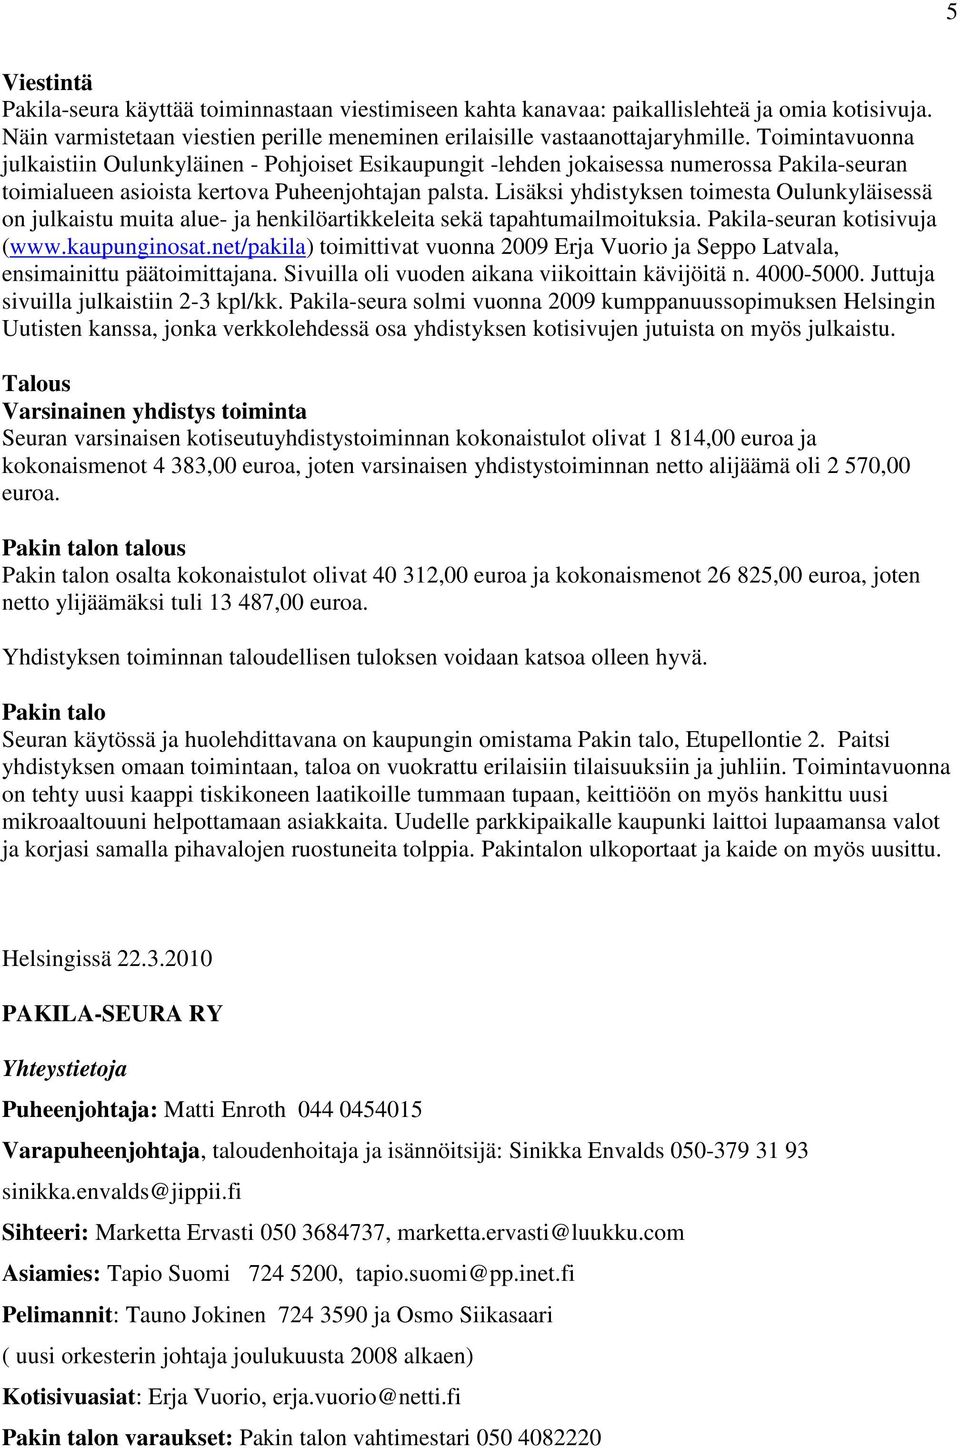 Lisäksi yhdistyksen toimesta Oulunkyläisessä on julkaistu muita alue- ja henkilöartikkeleita sekä tapahtumailmoituksia. Pakila-seuran kotisivuja (www.kaupunginosat.